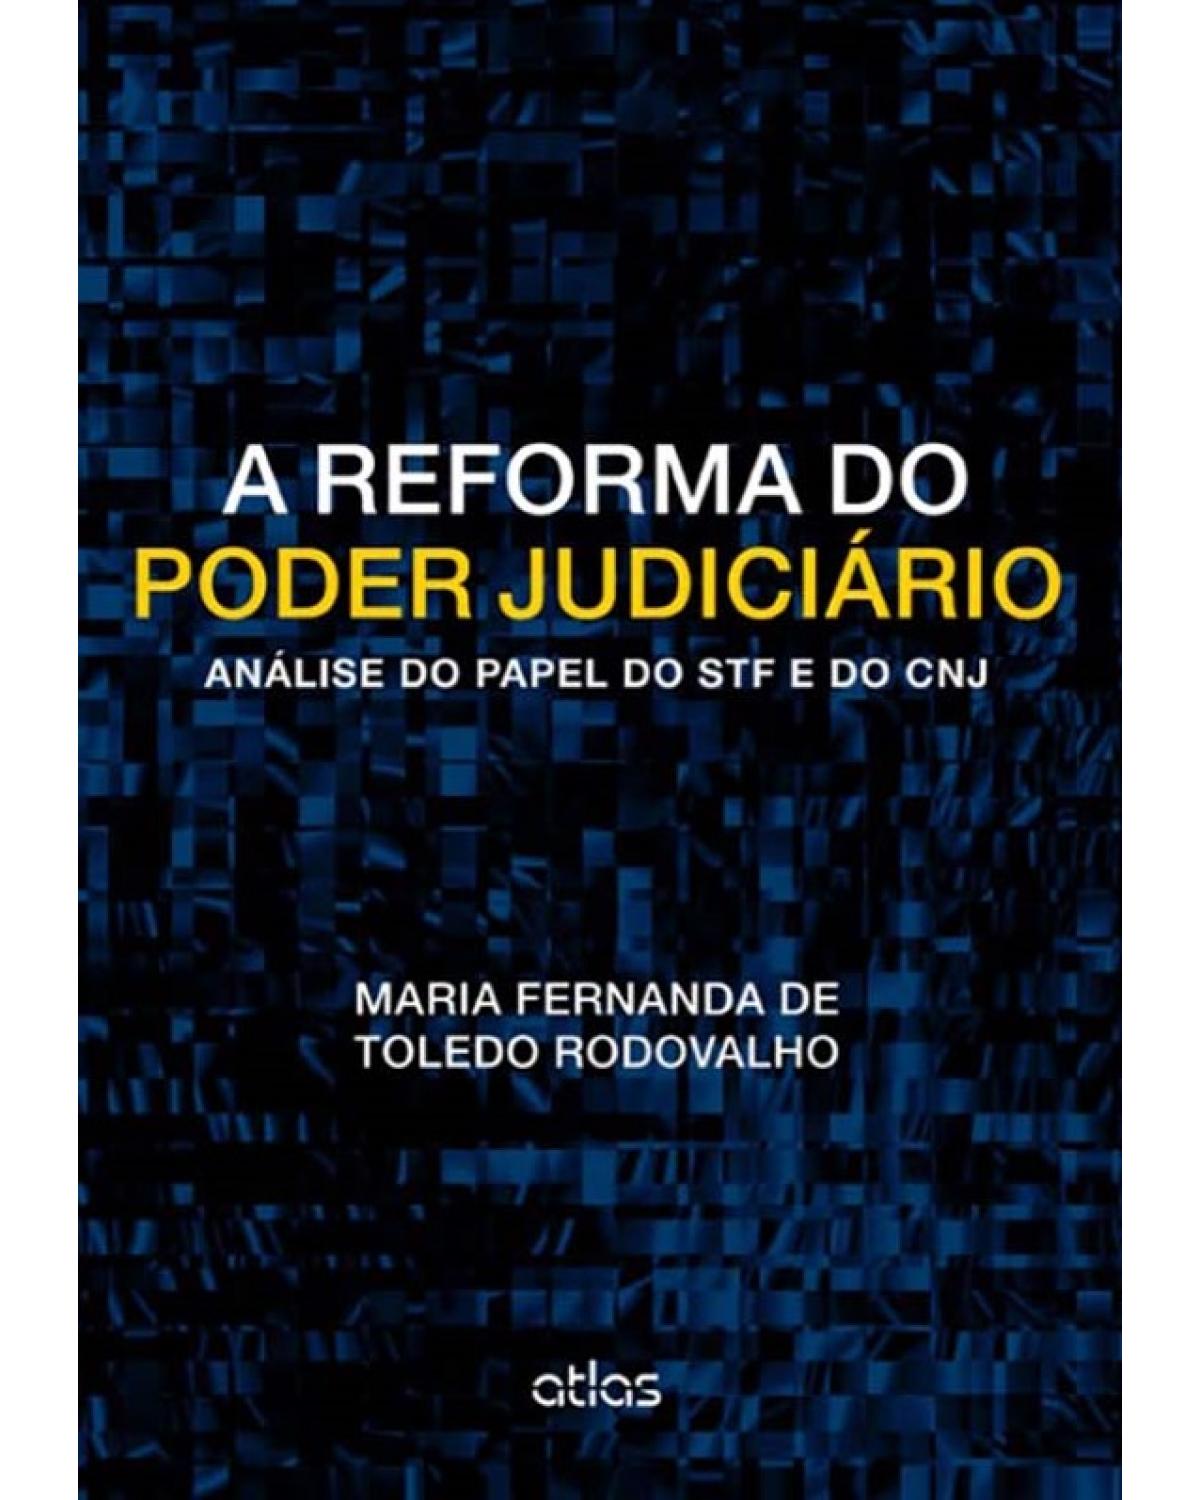 A reforma do poder judiciário - Análise do papel do STF e do CNJ - 1ª Edição | 2014